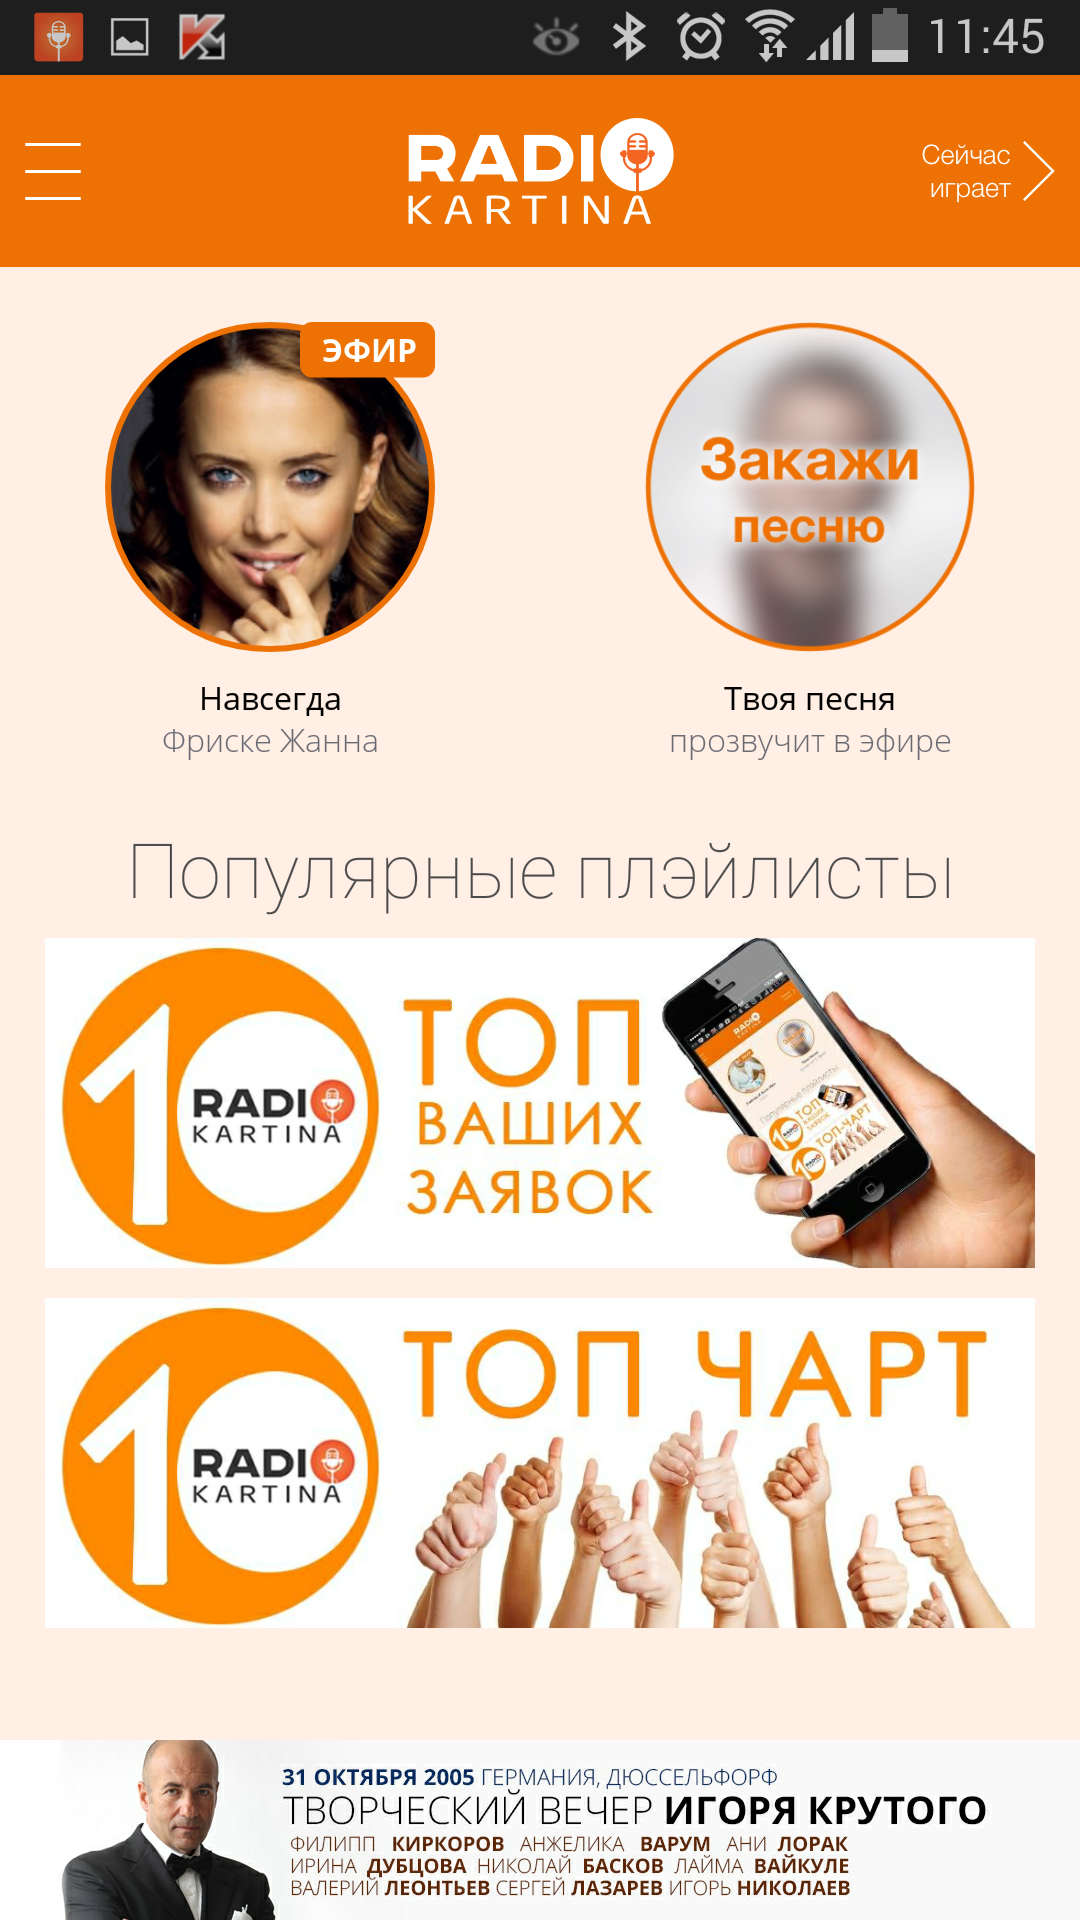 Android application Radio Kartina screenshort